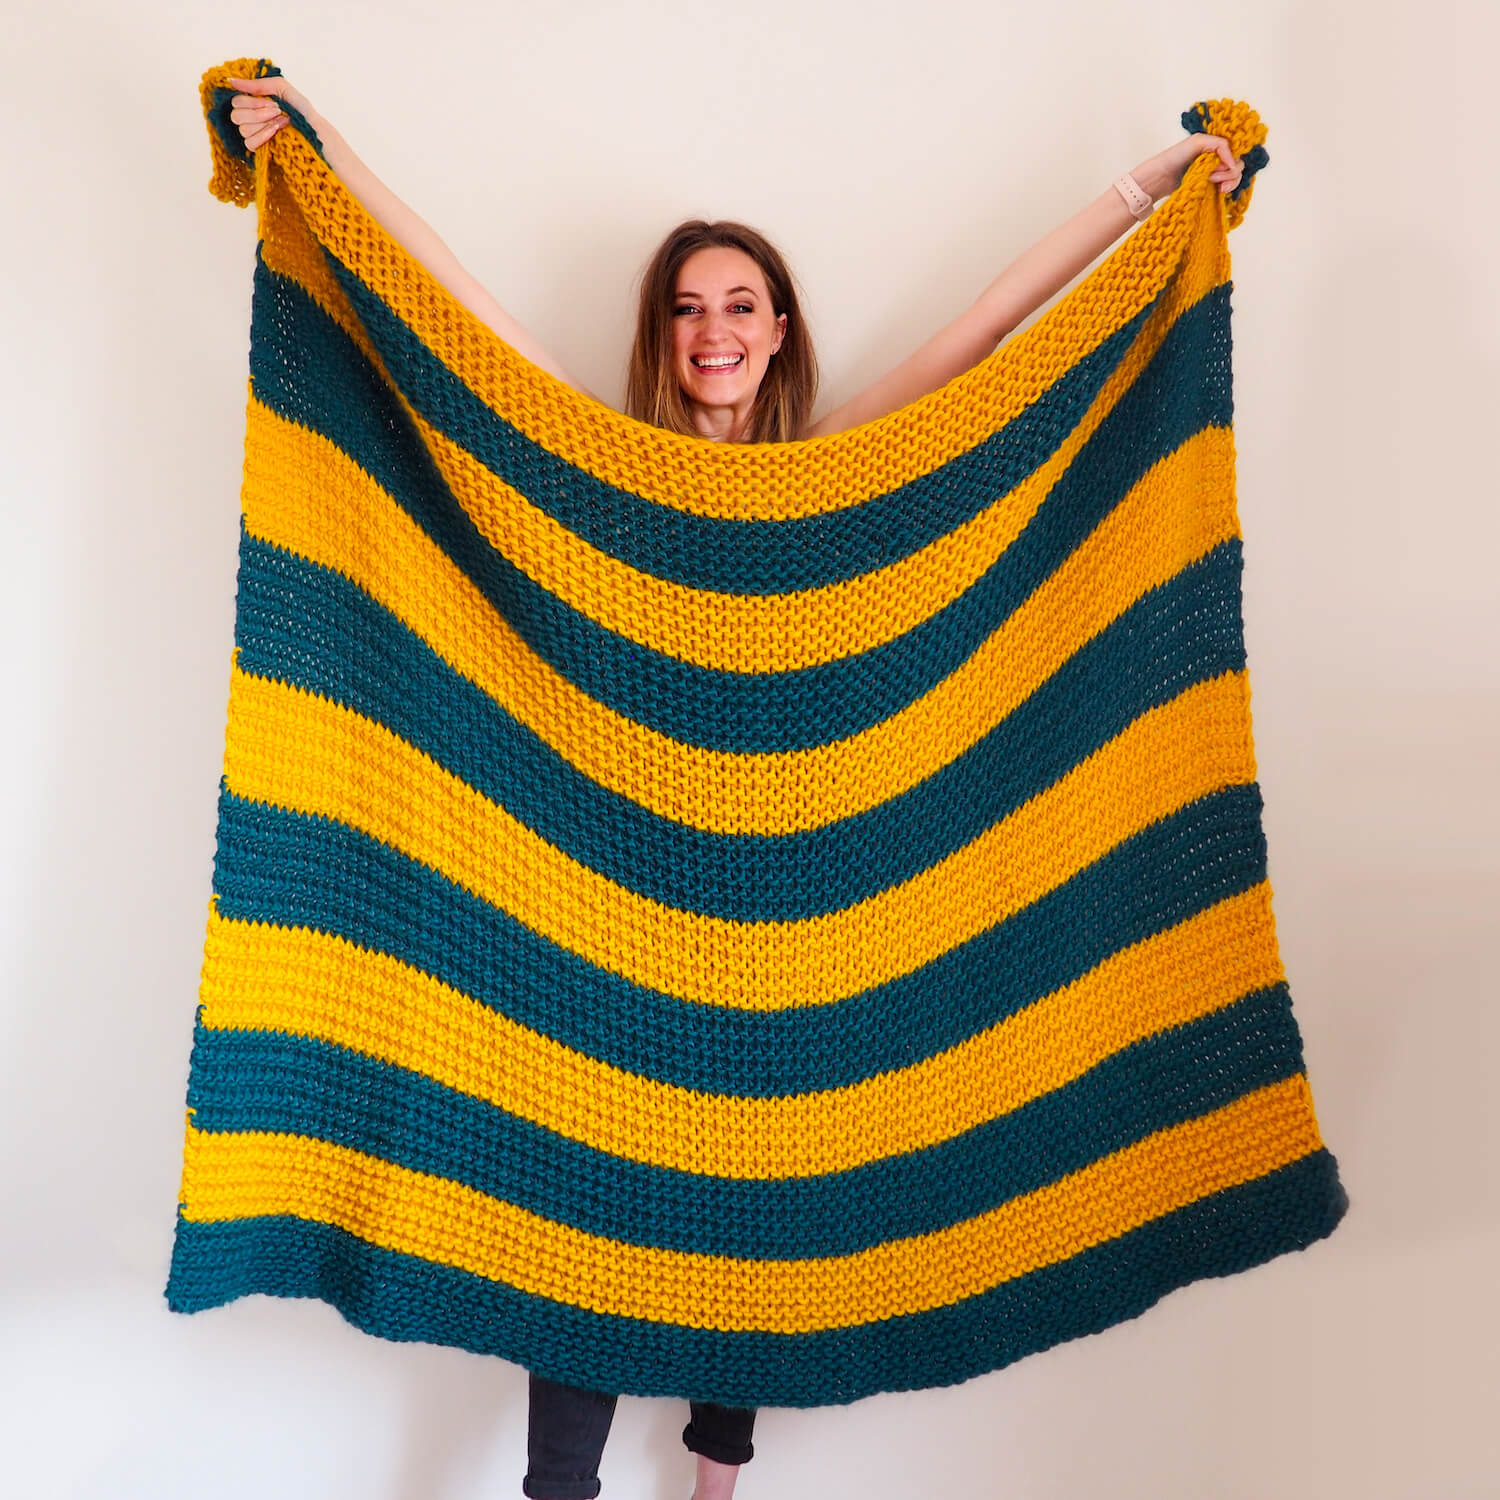 Knitting Kit - Beginners Blanket - Lauren Aston Designs